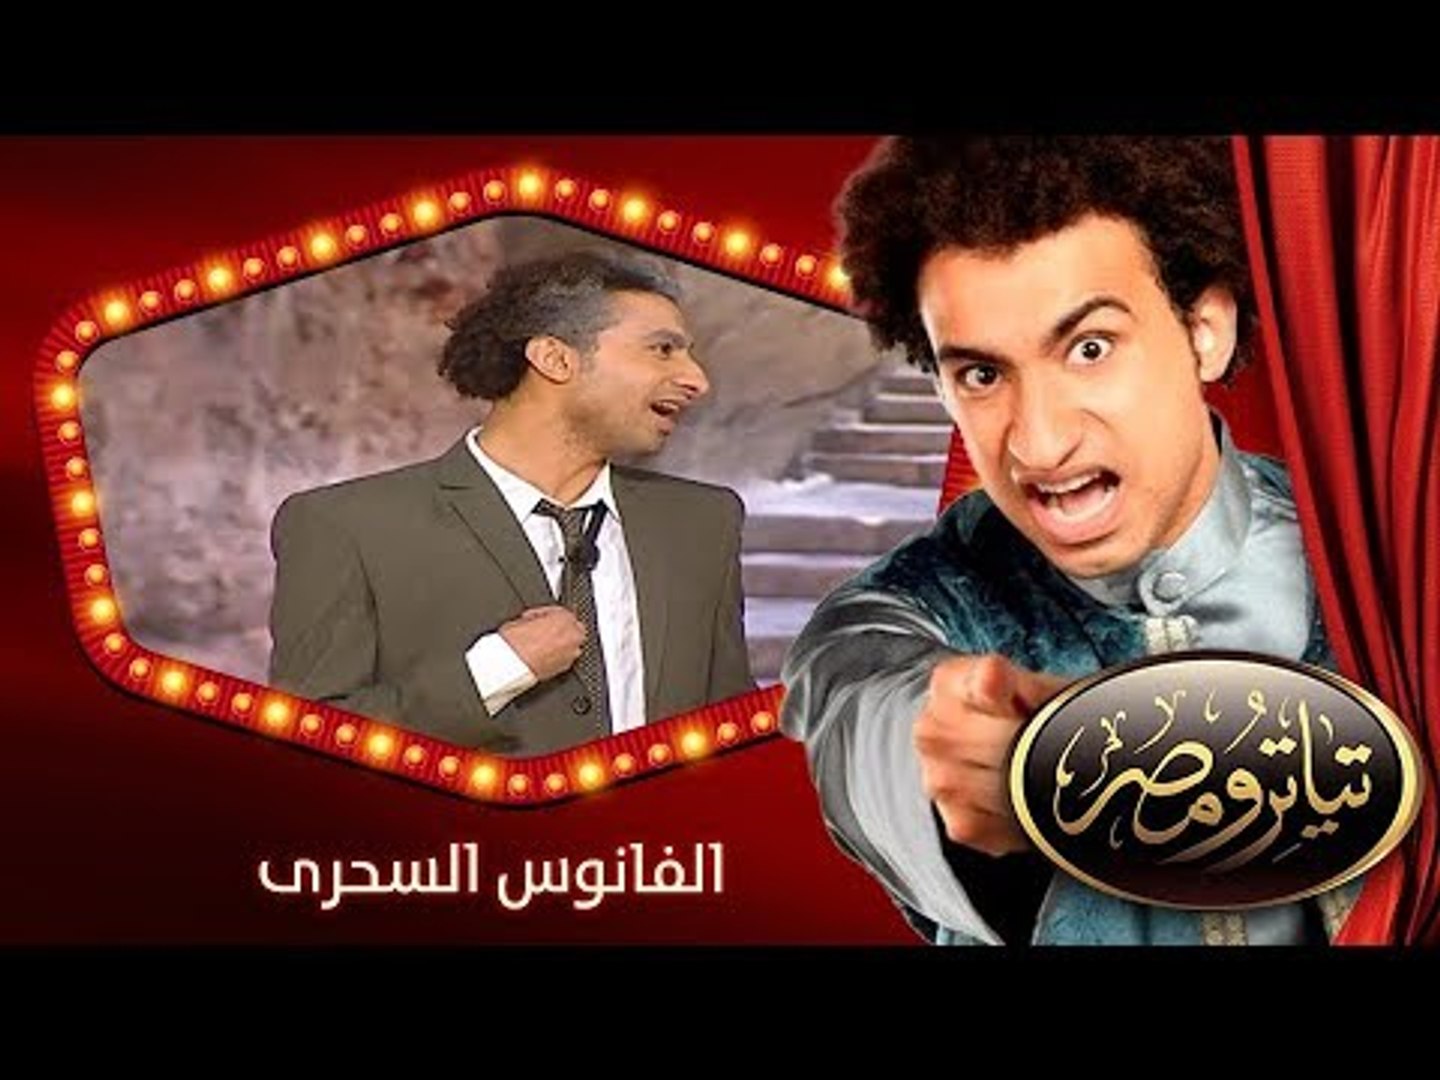 تياترو مصر | الموسم الأول | الحلقة 19 التاسعة عشر | الفانوس السحرى |علي  ربيع | Teatro Masr - video Dailymotion